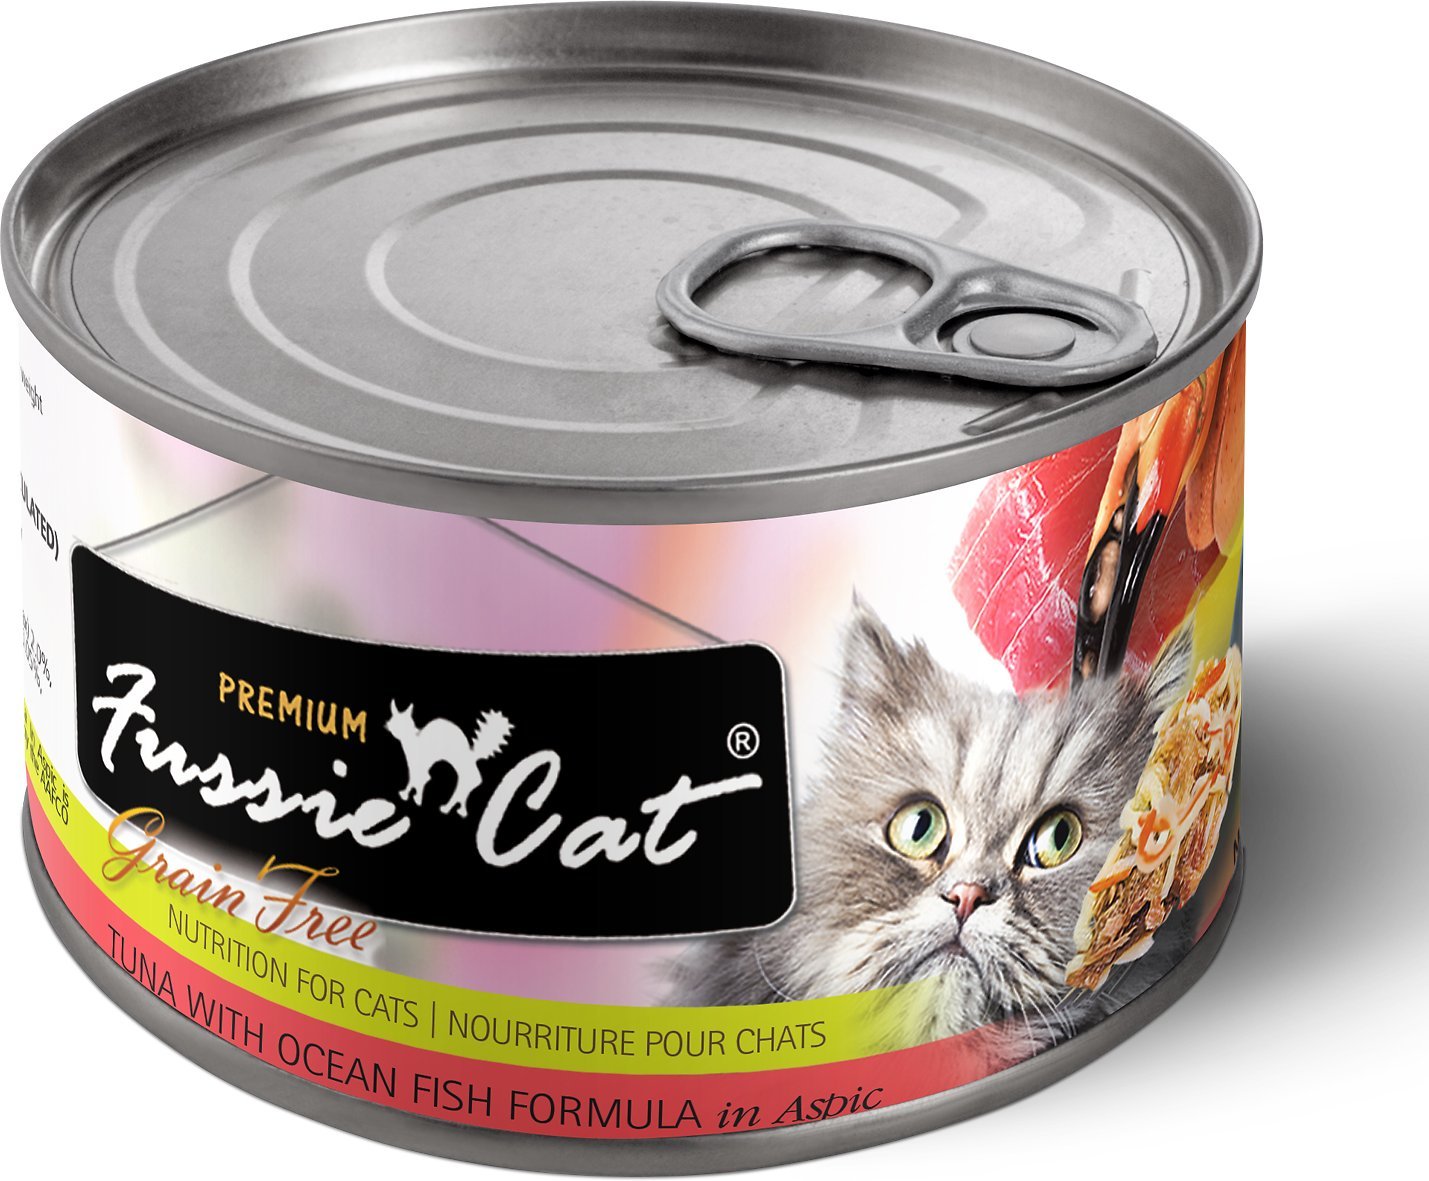 FUSSIE CAT Premium Tuna with Ocean Fish Formula in Aspic ...